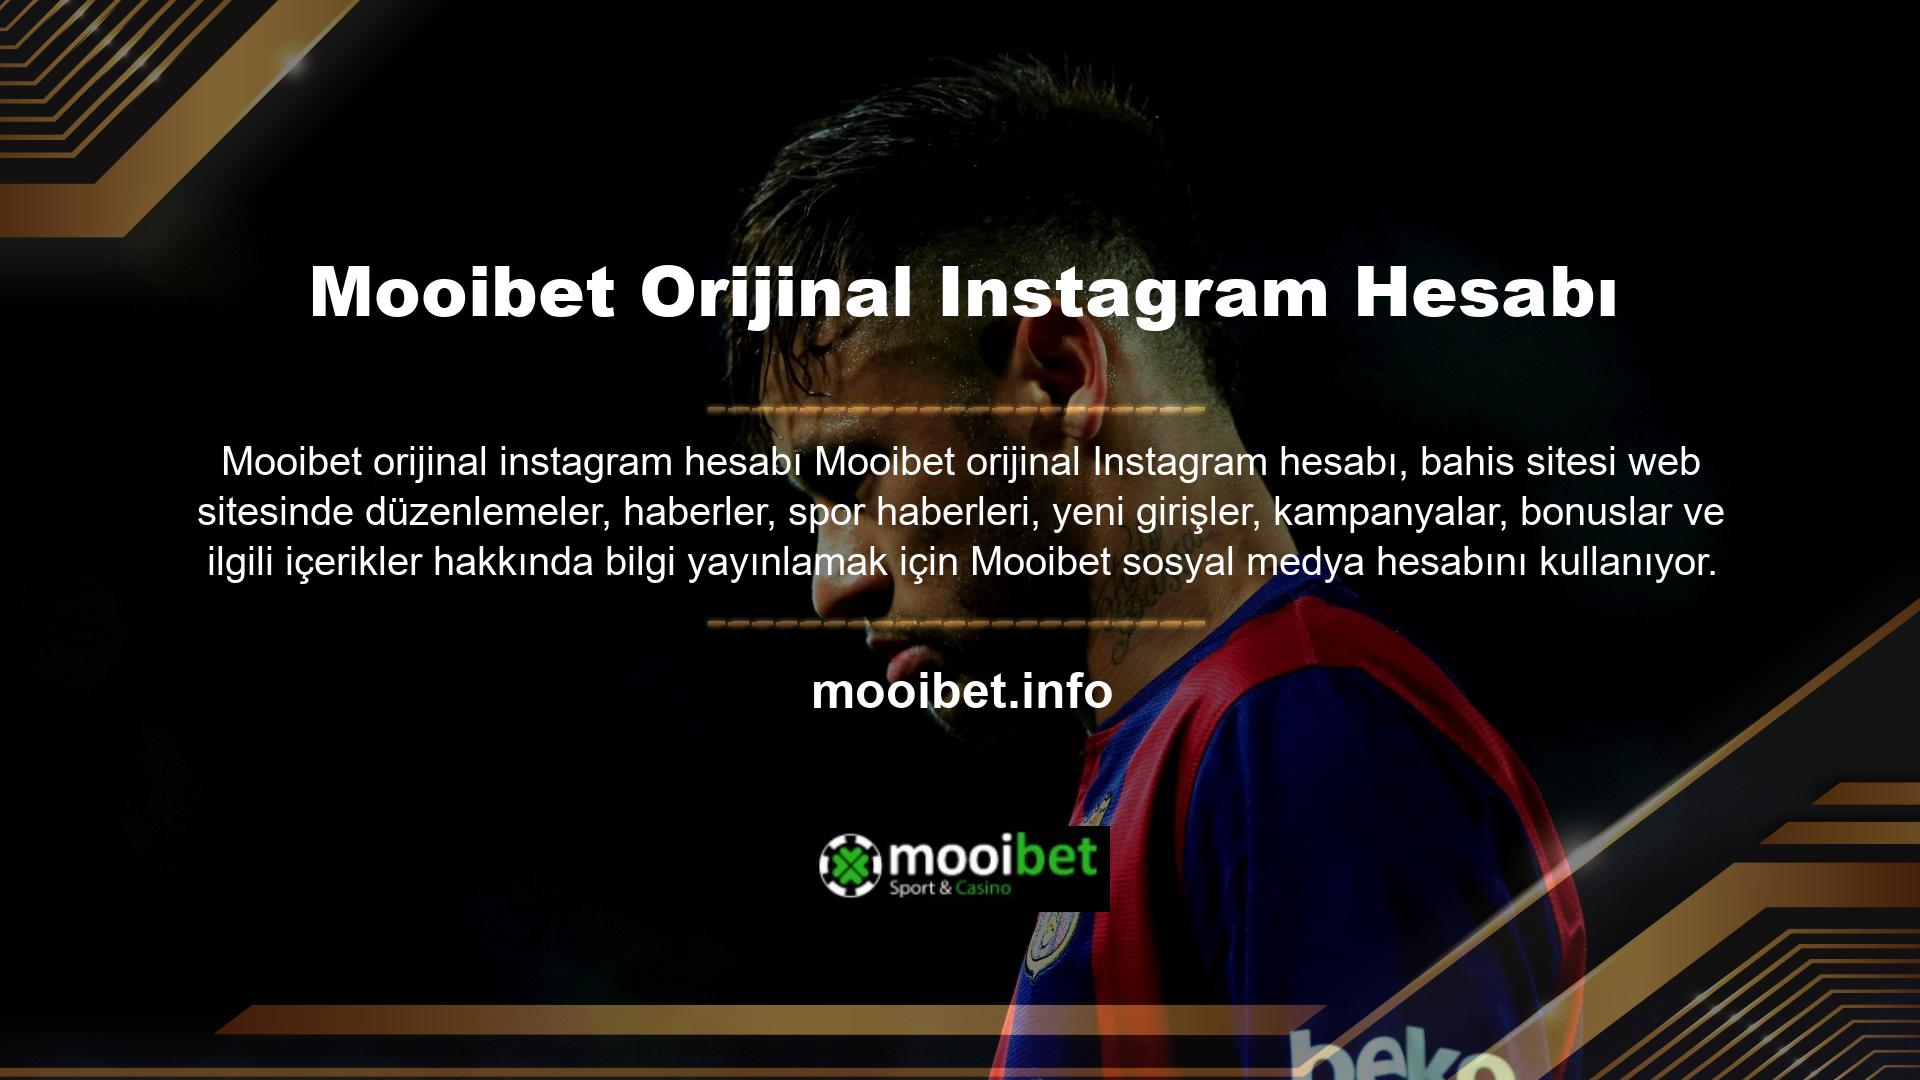 Sitenin orijinal Twitter, Mooibet Instagram ve Facebook hesapları 7/24 hizmet vermektedir